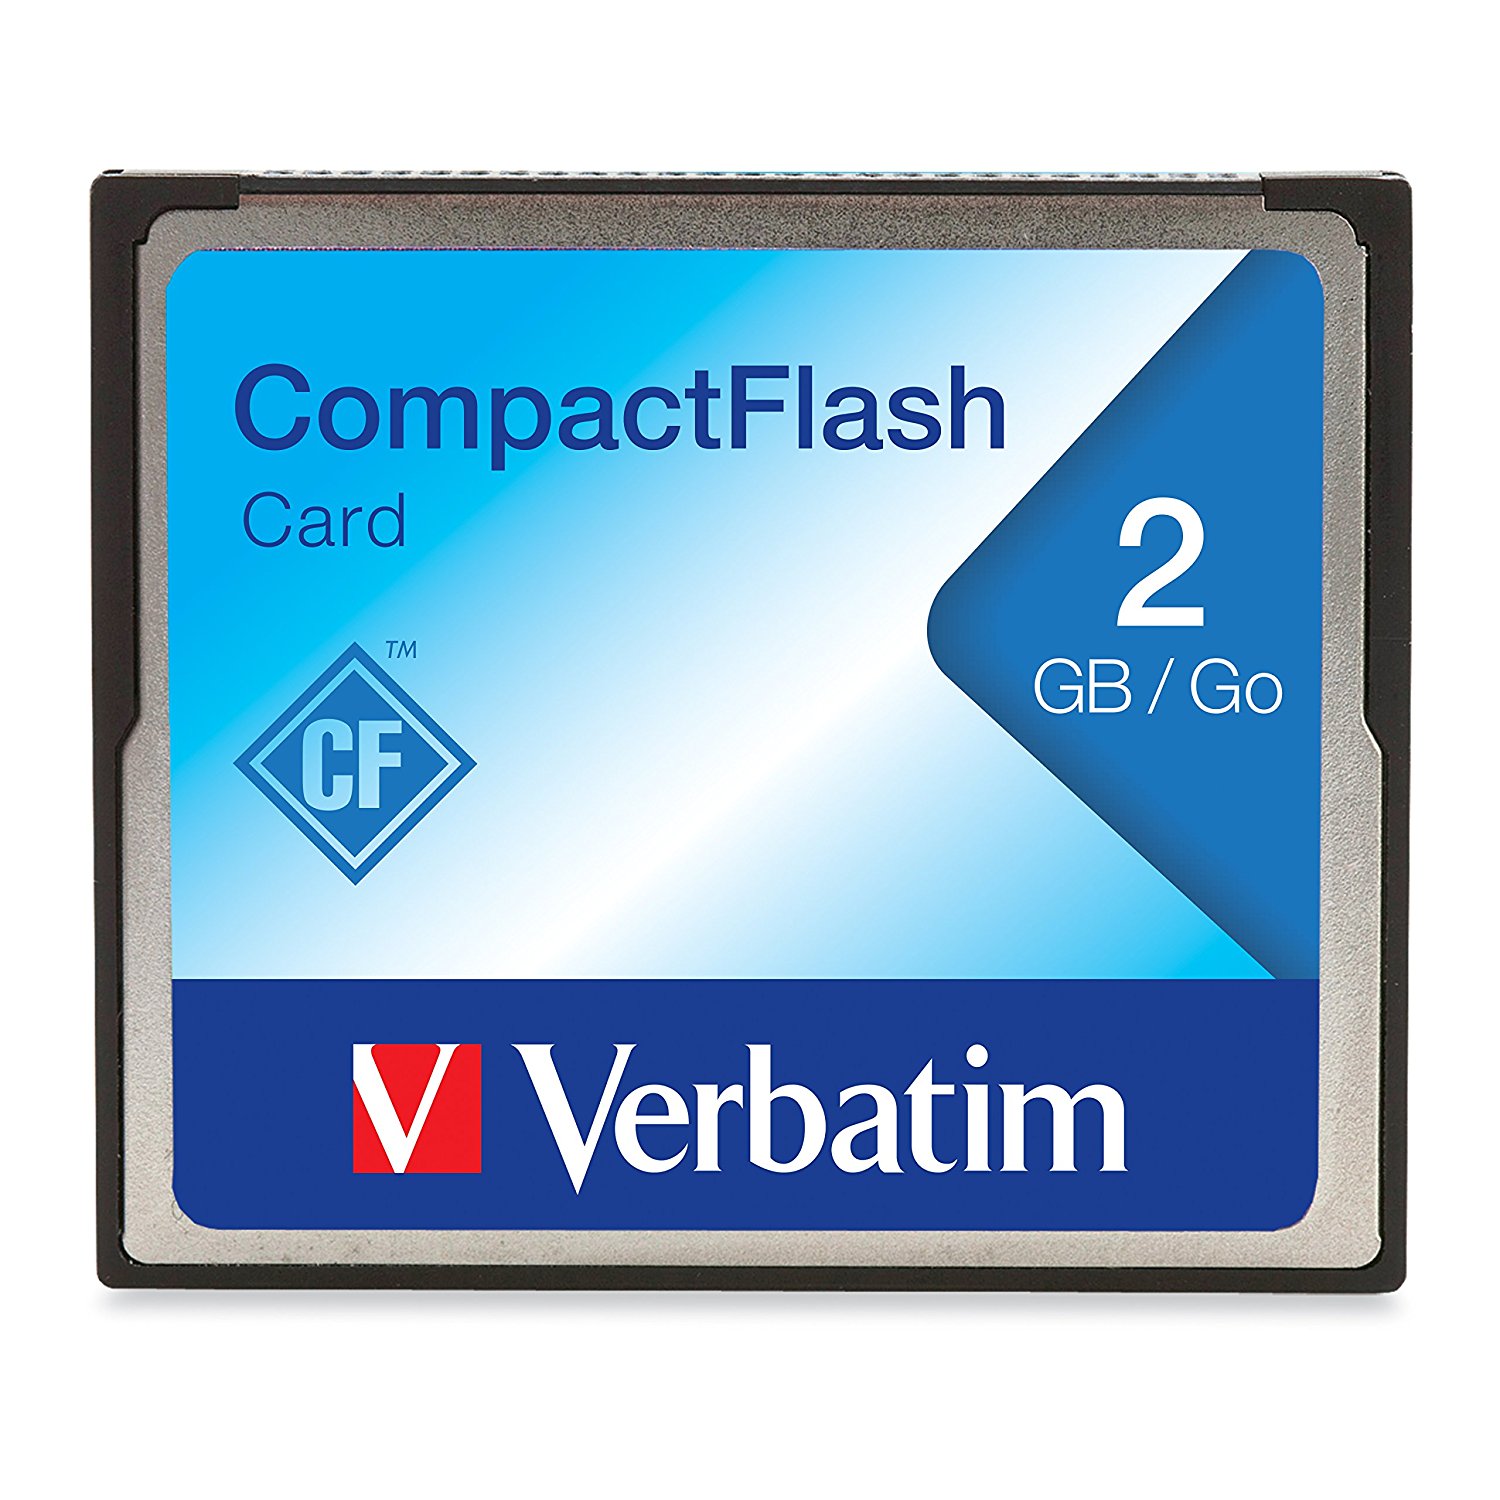 VERBATIM 2GB COMPACTFLASH MEMORY CARD 47012